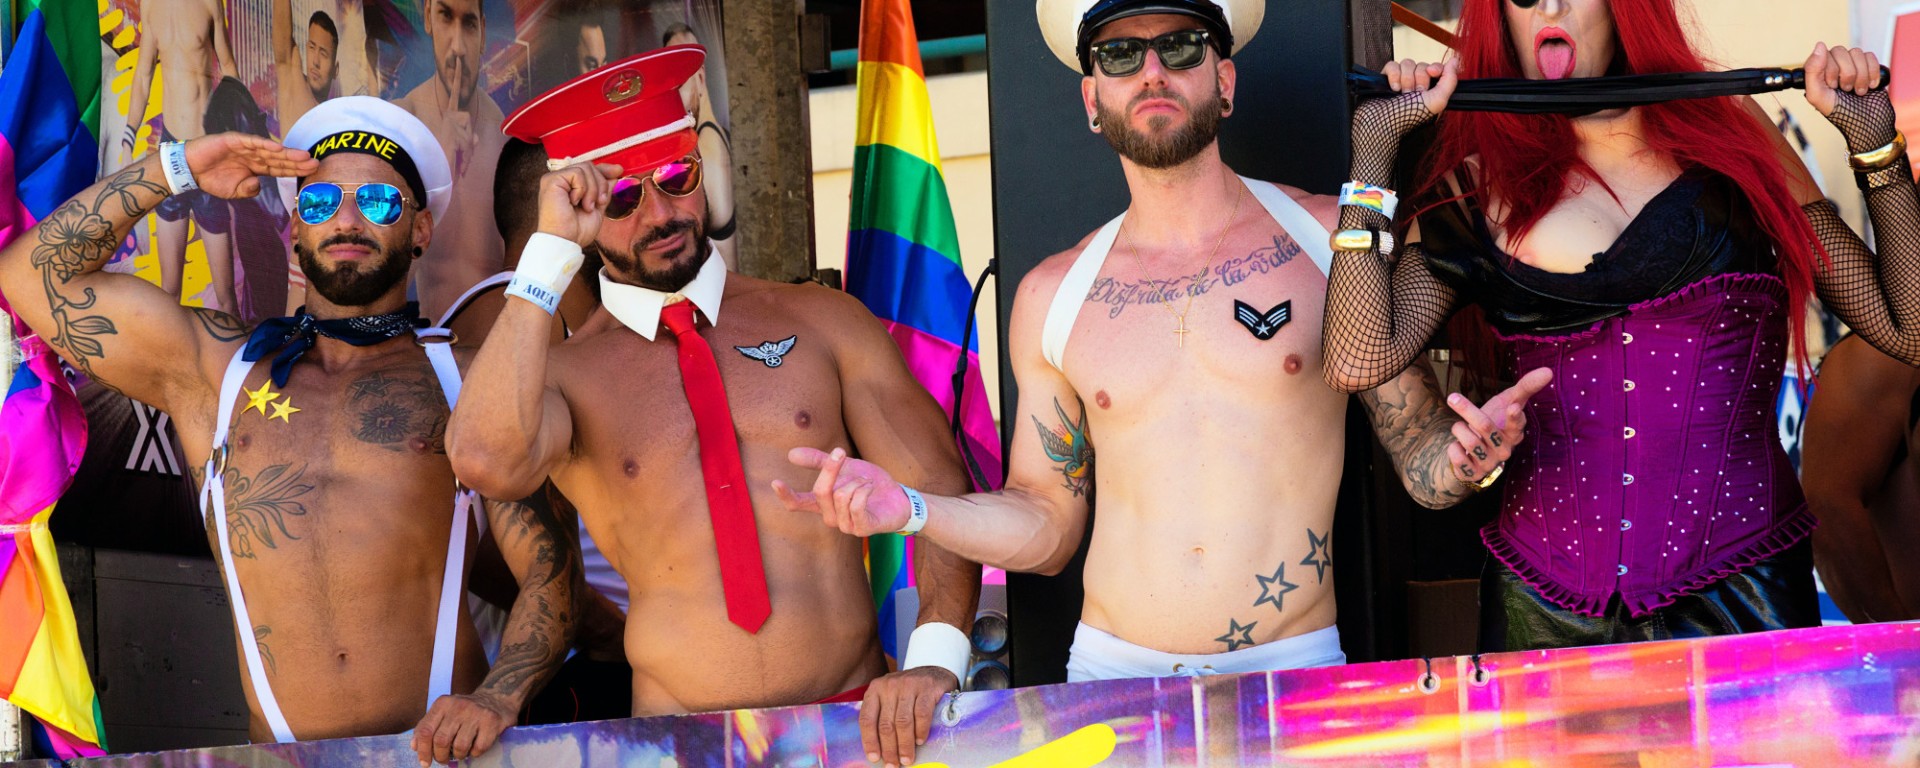 Gay, gay and gay. Image: Quino Al via Unsplash